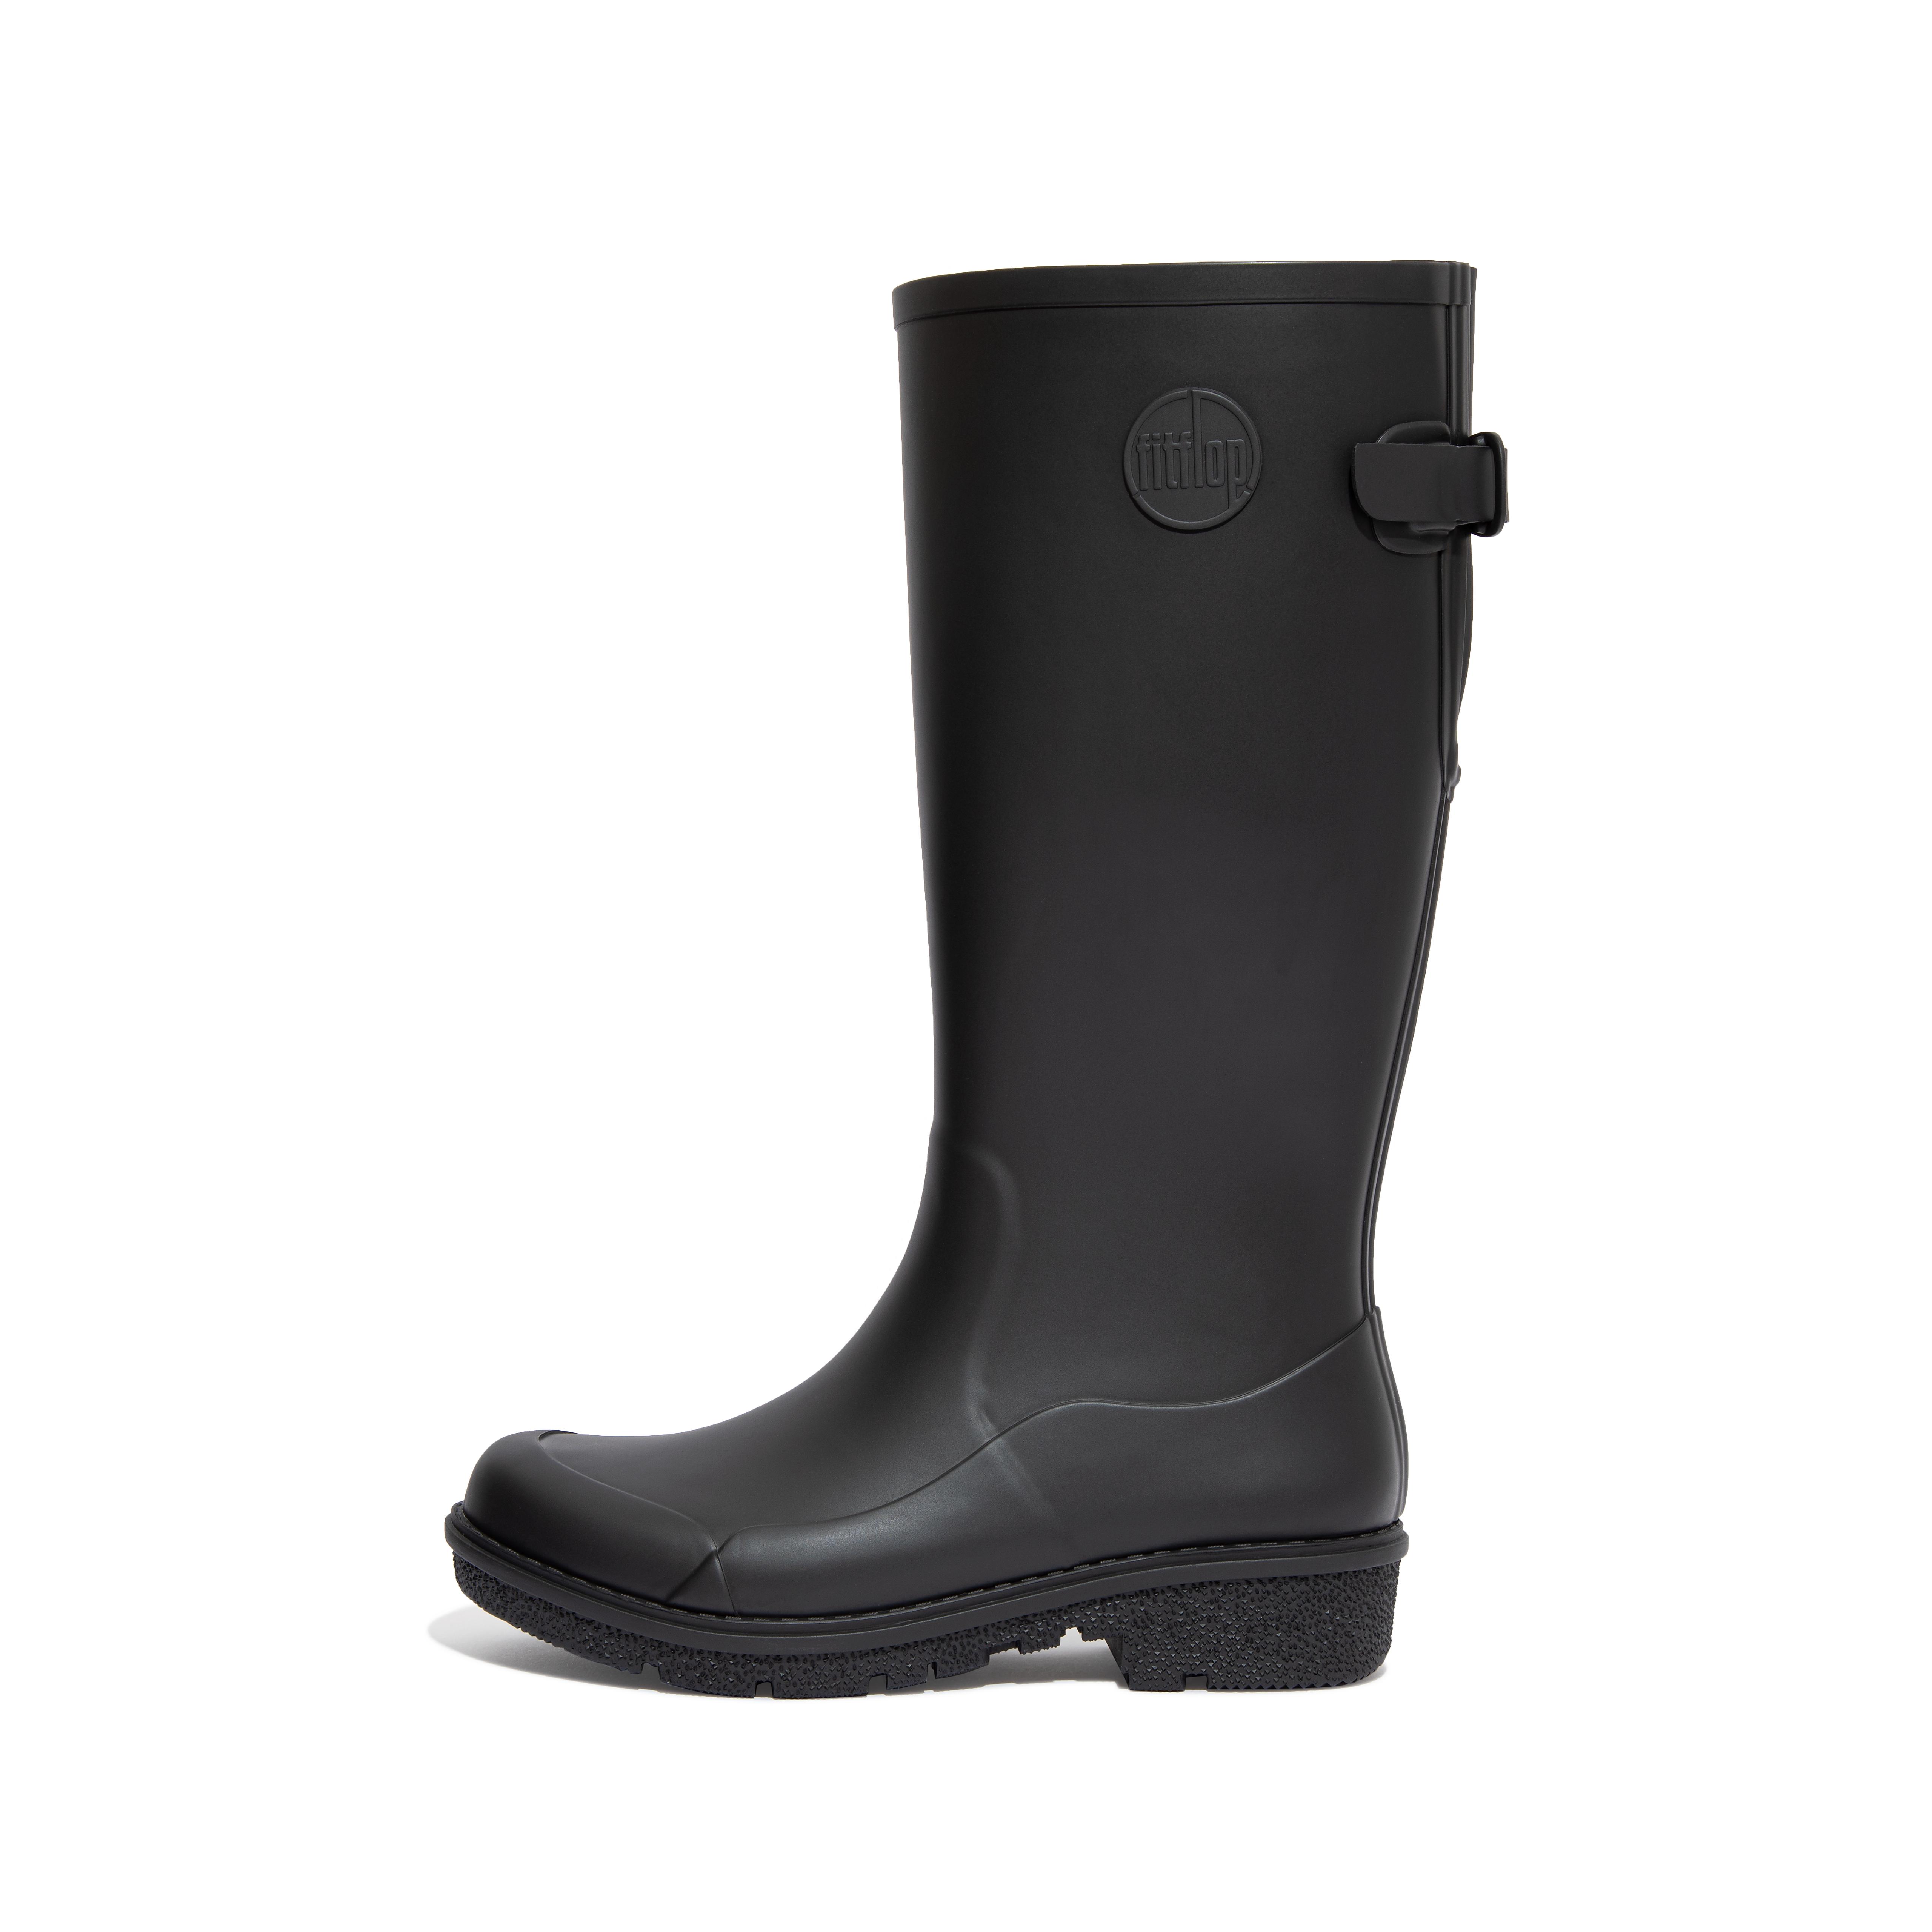 핏플랍 장화 (롱 레인부츠) FitFlop WONDERWELLY Tall Rain Boots,All Black